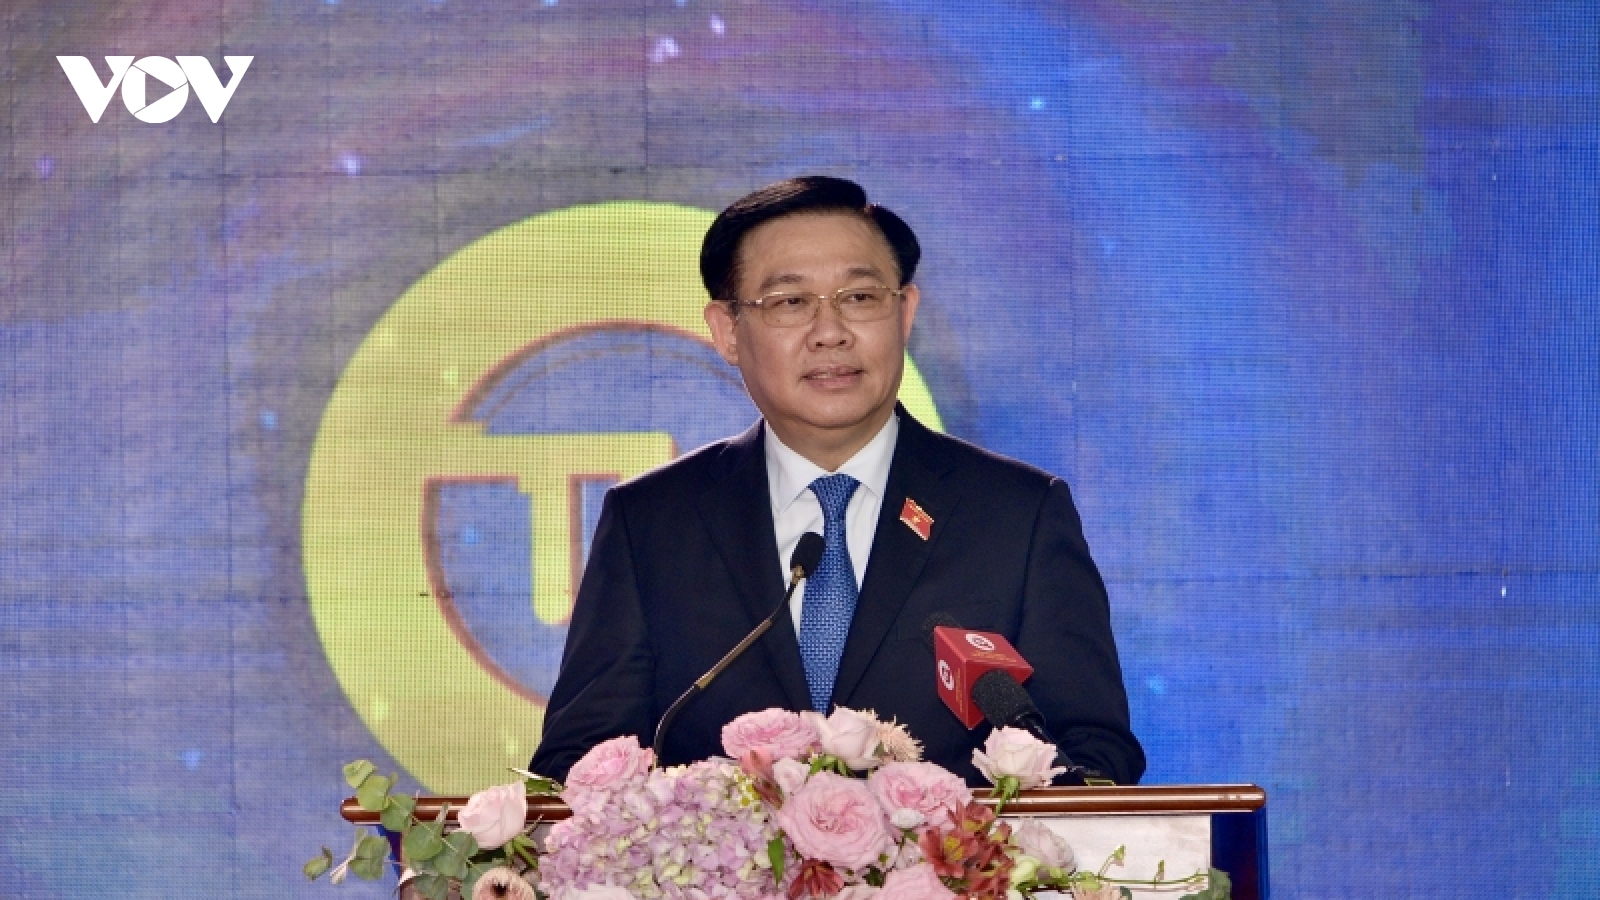 Chủ tịch Quốc hội dự lễ công bố bộ nhận diện mới Truyền hình Quốc hội Việt Nam